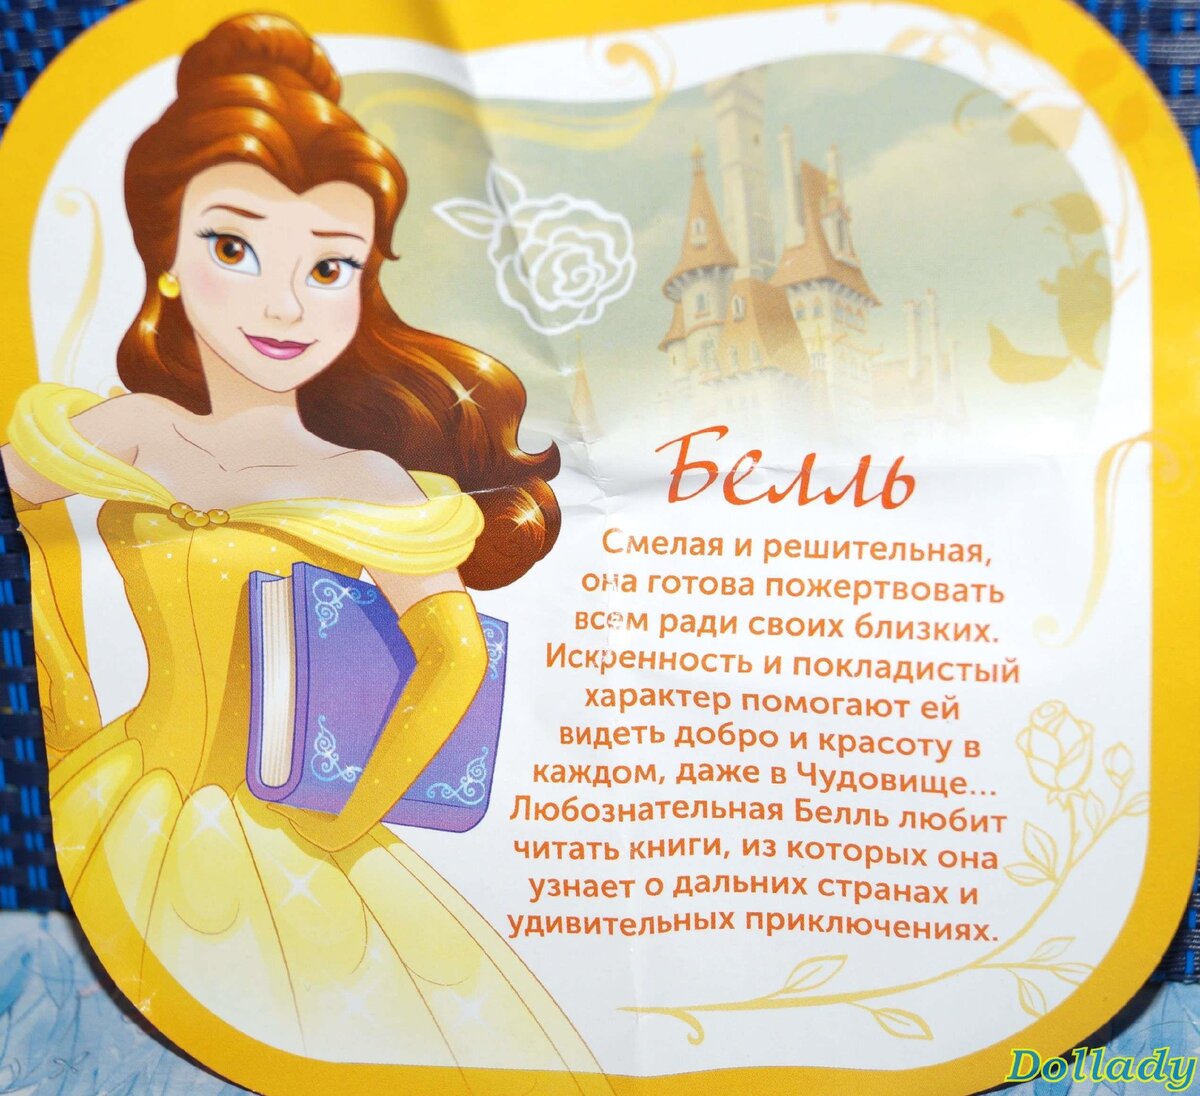 Загадки про принцесс. Sweetbox Disney принцесса. Загадки про принцесс Диснея. Стихи про принцесс для девочек.